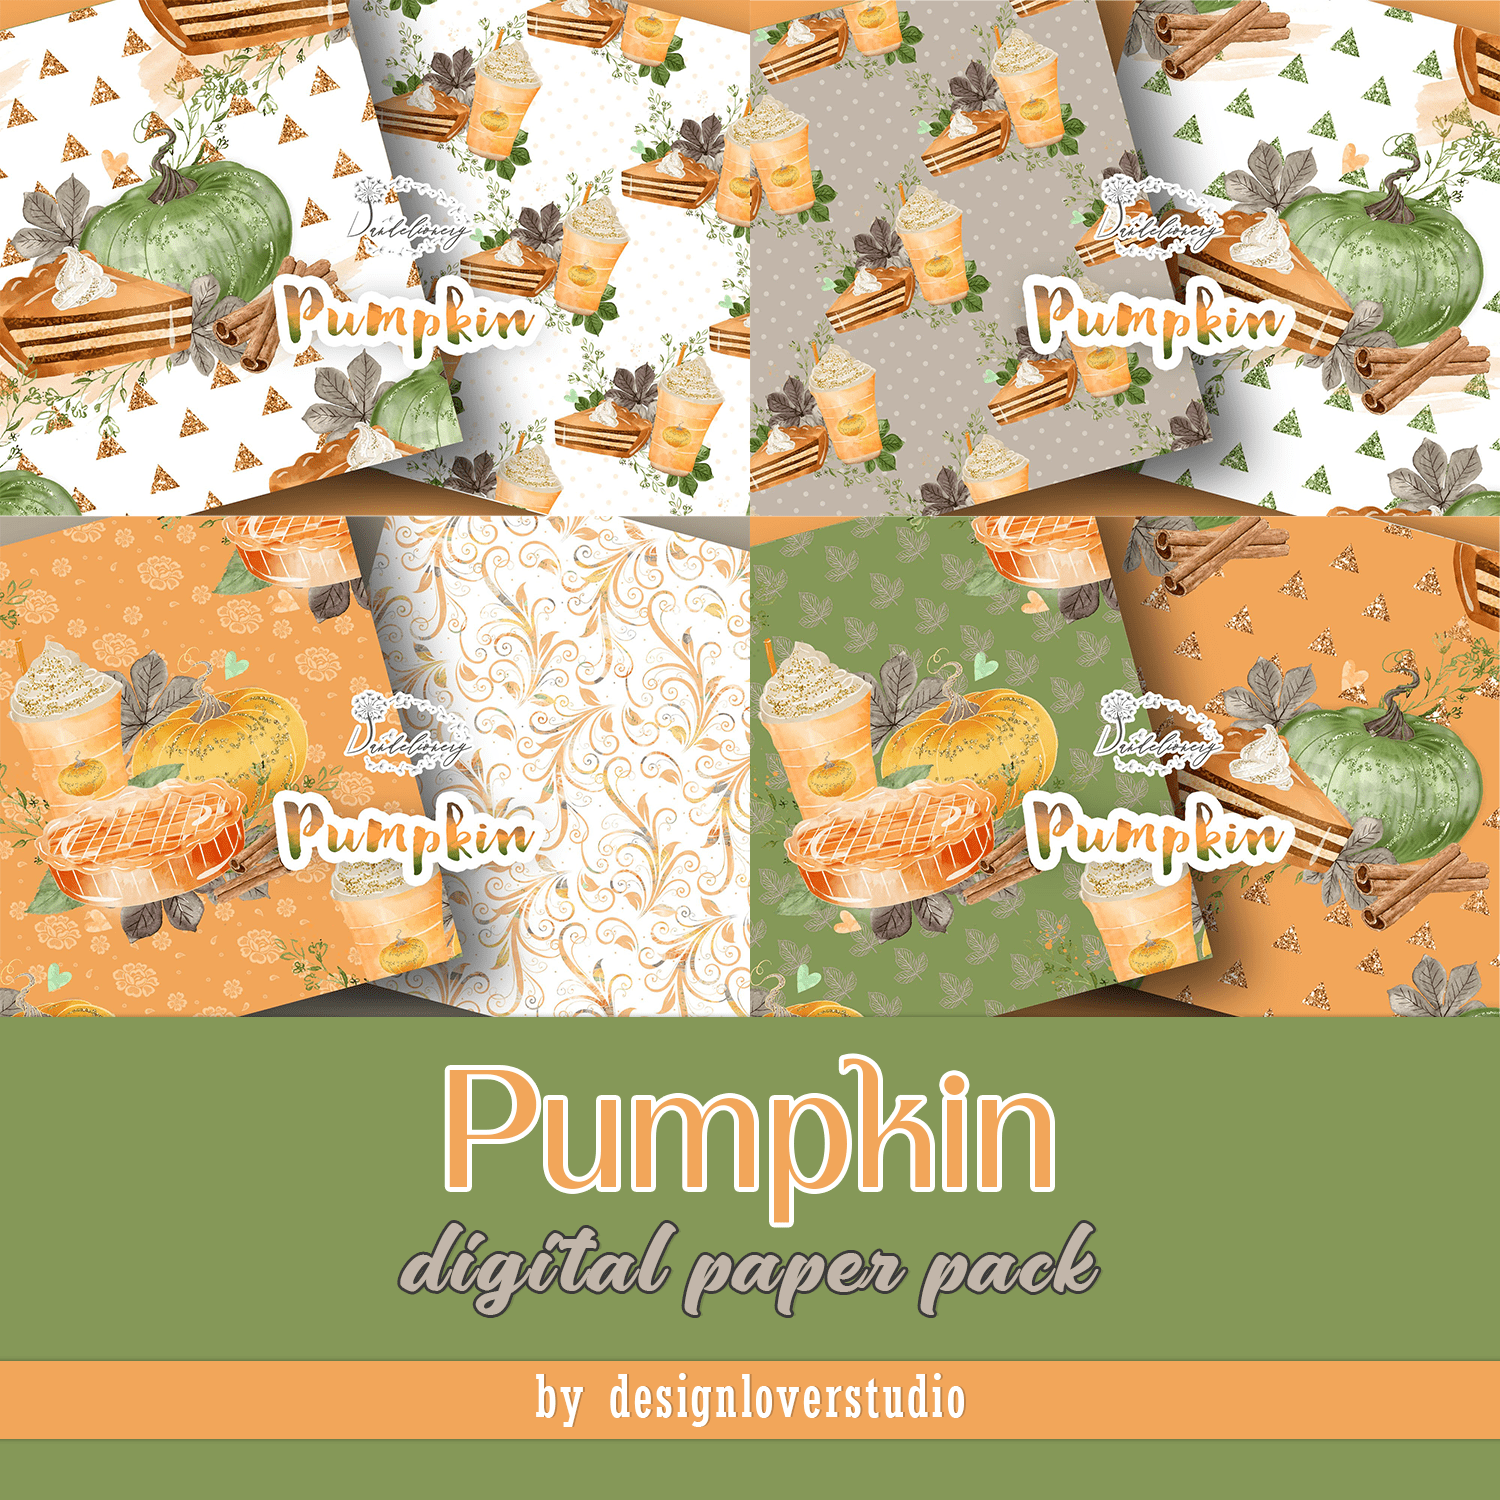 Pumpkin digital papaer pack.